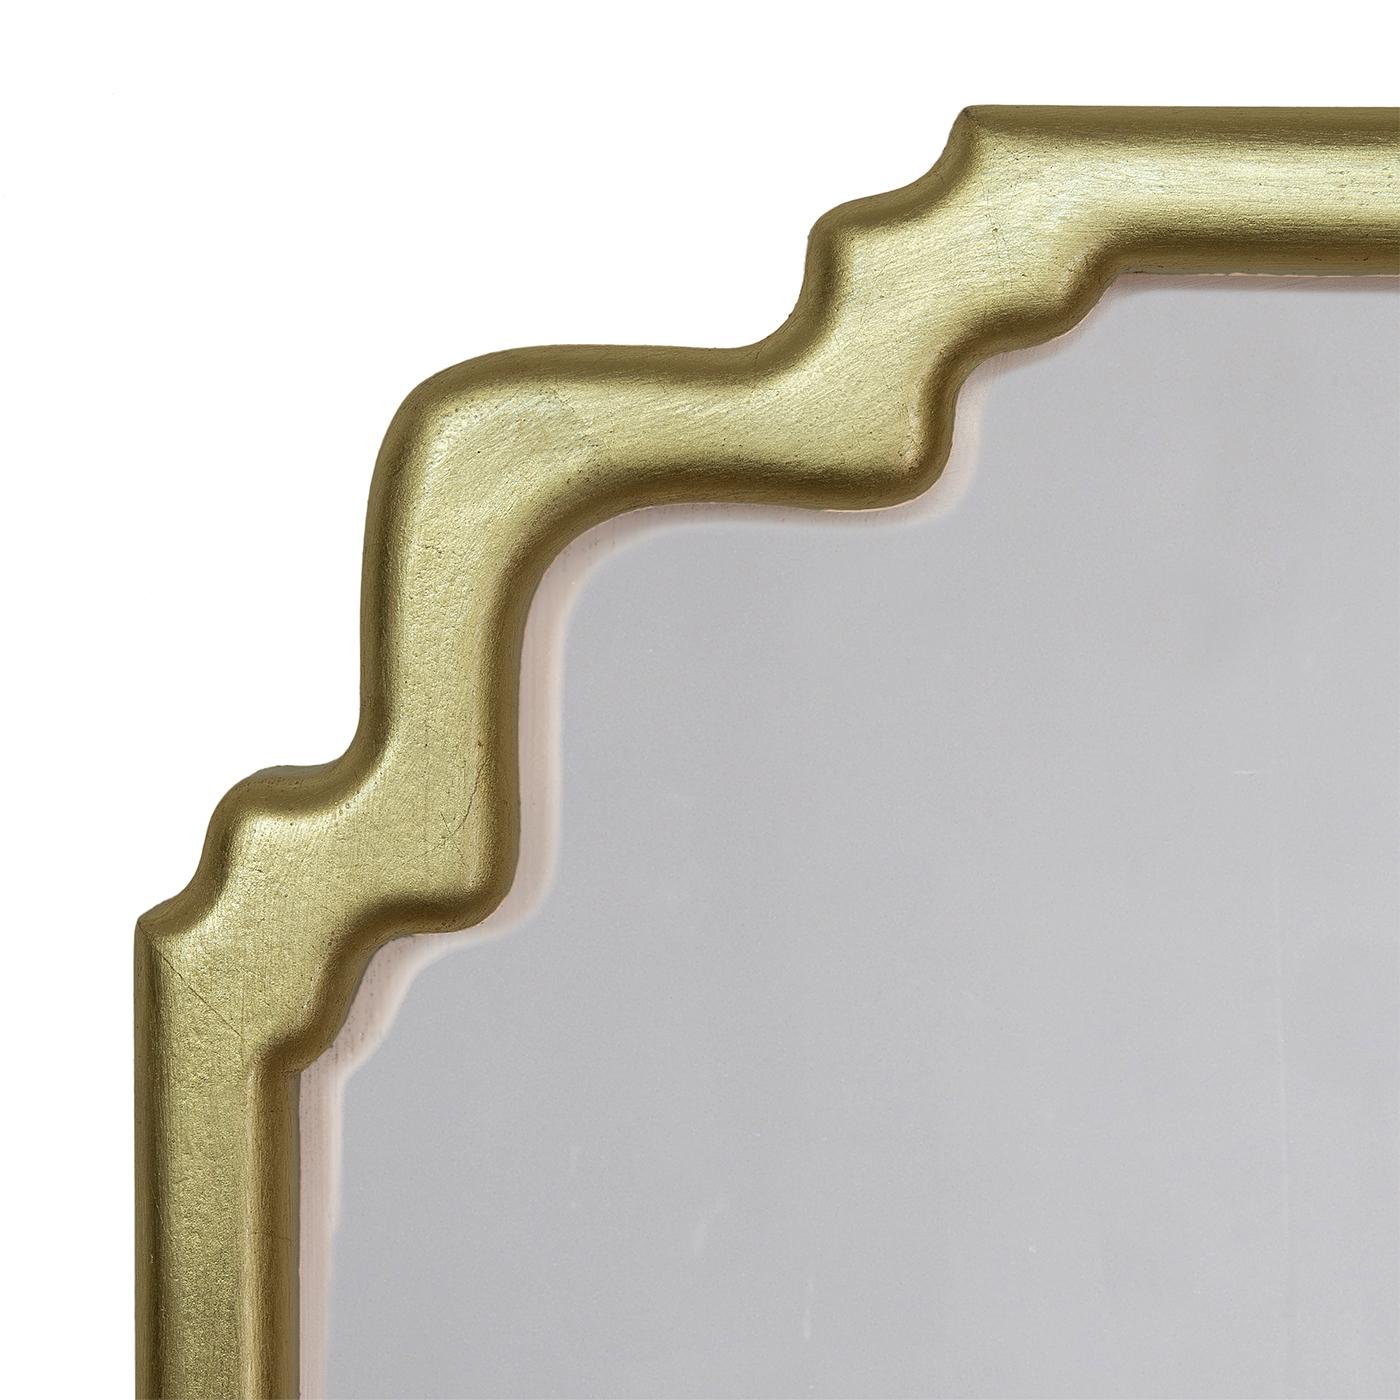 Elan Gold ist ein neuer Art-Deco-Holzspiegelrahmen. Die Form A ist einfach und elegant und eignet sich für jeden Raum, besonders wenn sie als Paar verwendet wird. Das Blattgold-Finish wird im Spini-Labor in Florenz handgefertigt. Wenden Sie sich